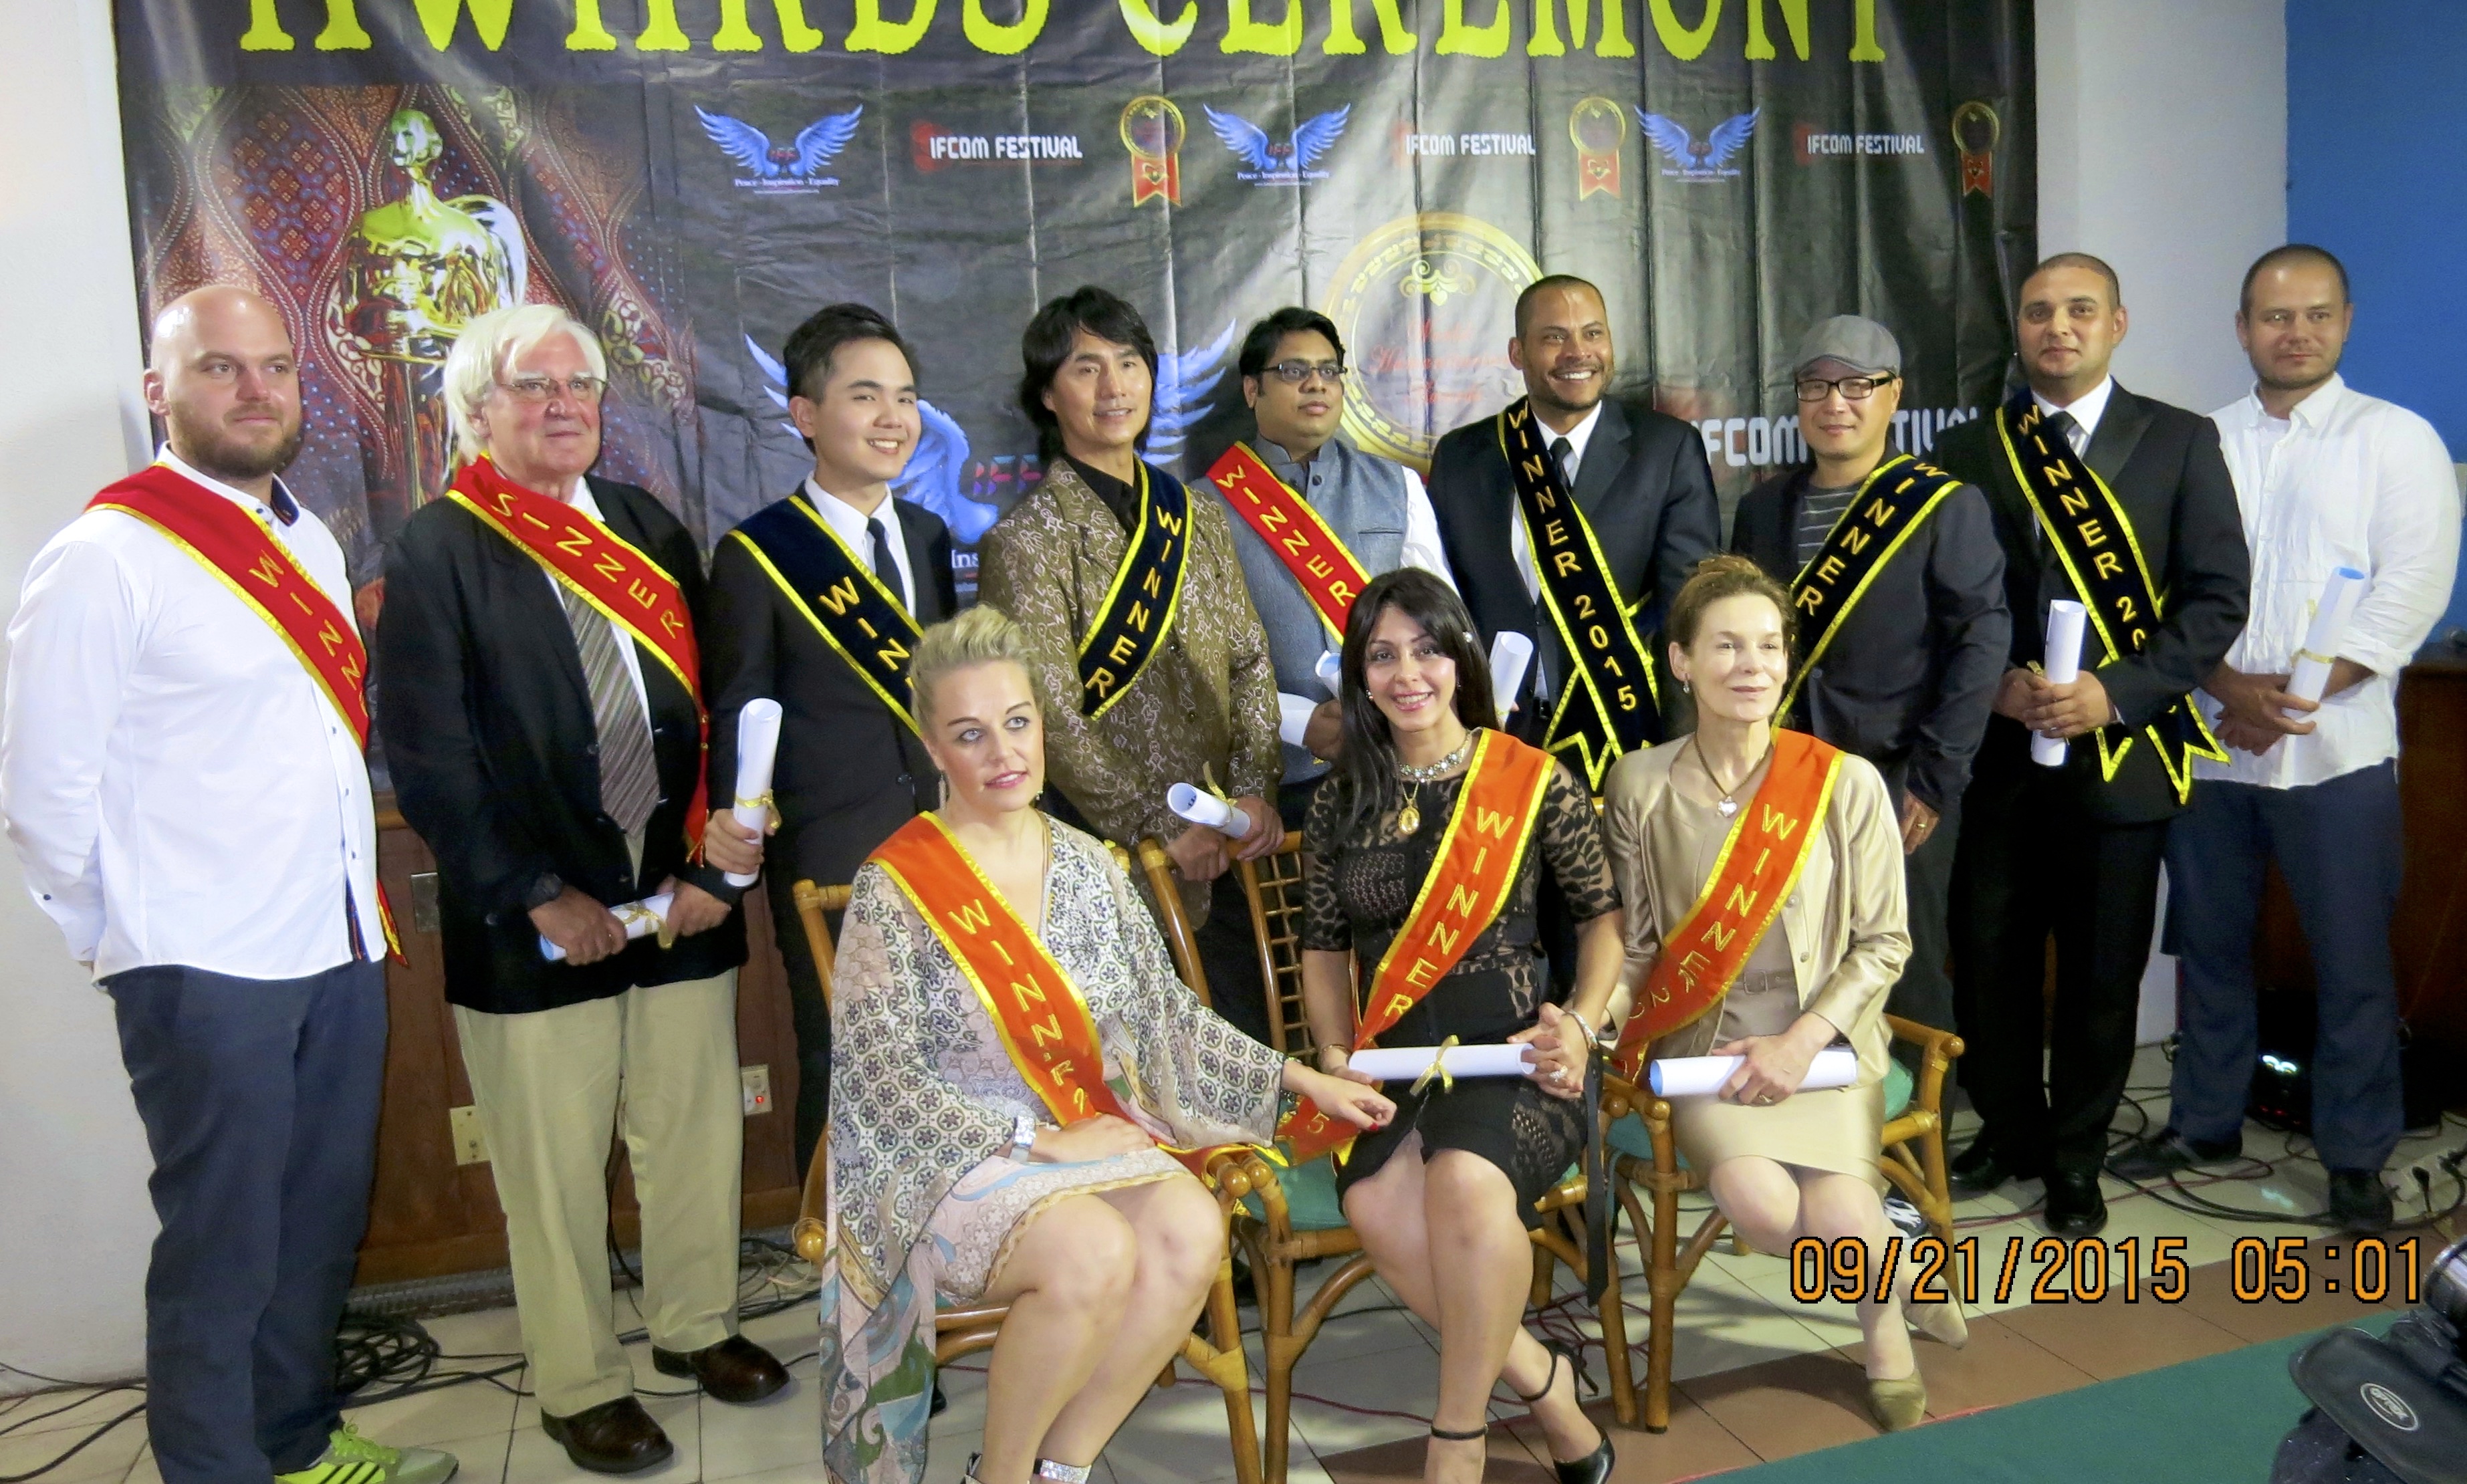 Award ceremony in Jakarta